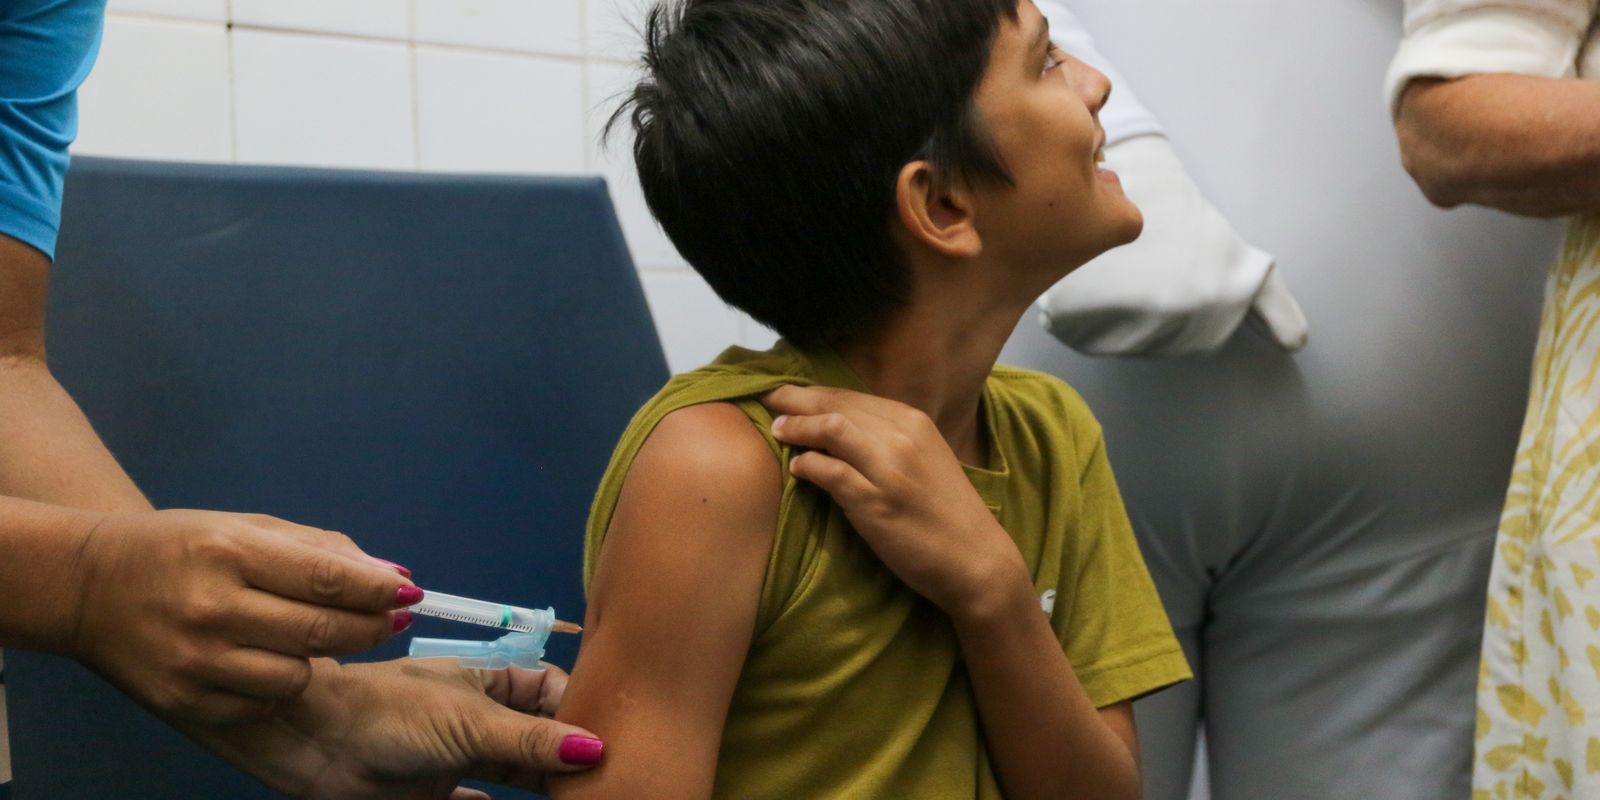 Mais sete municípios do estado de SP começam vacinação contra dengue